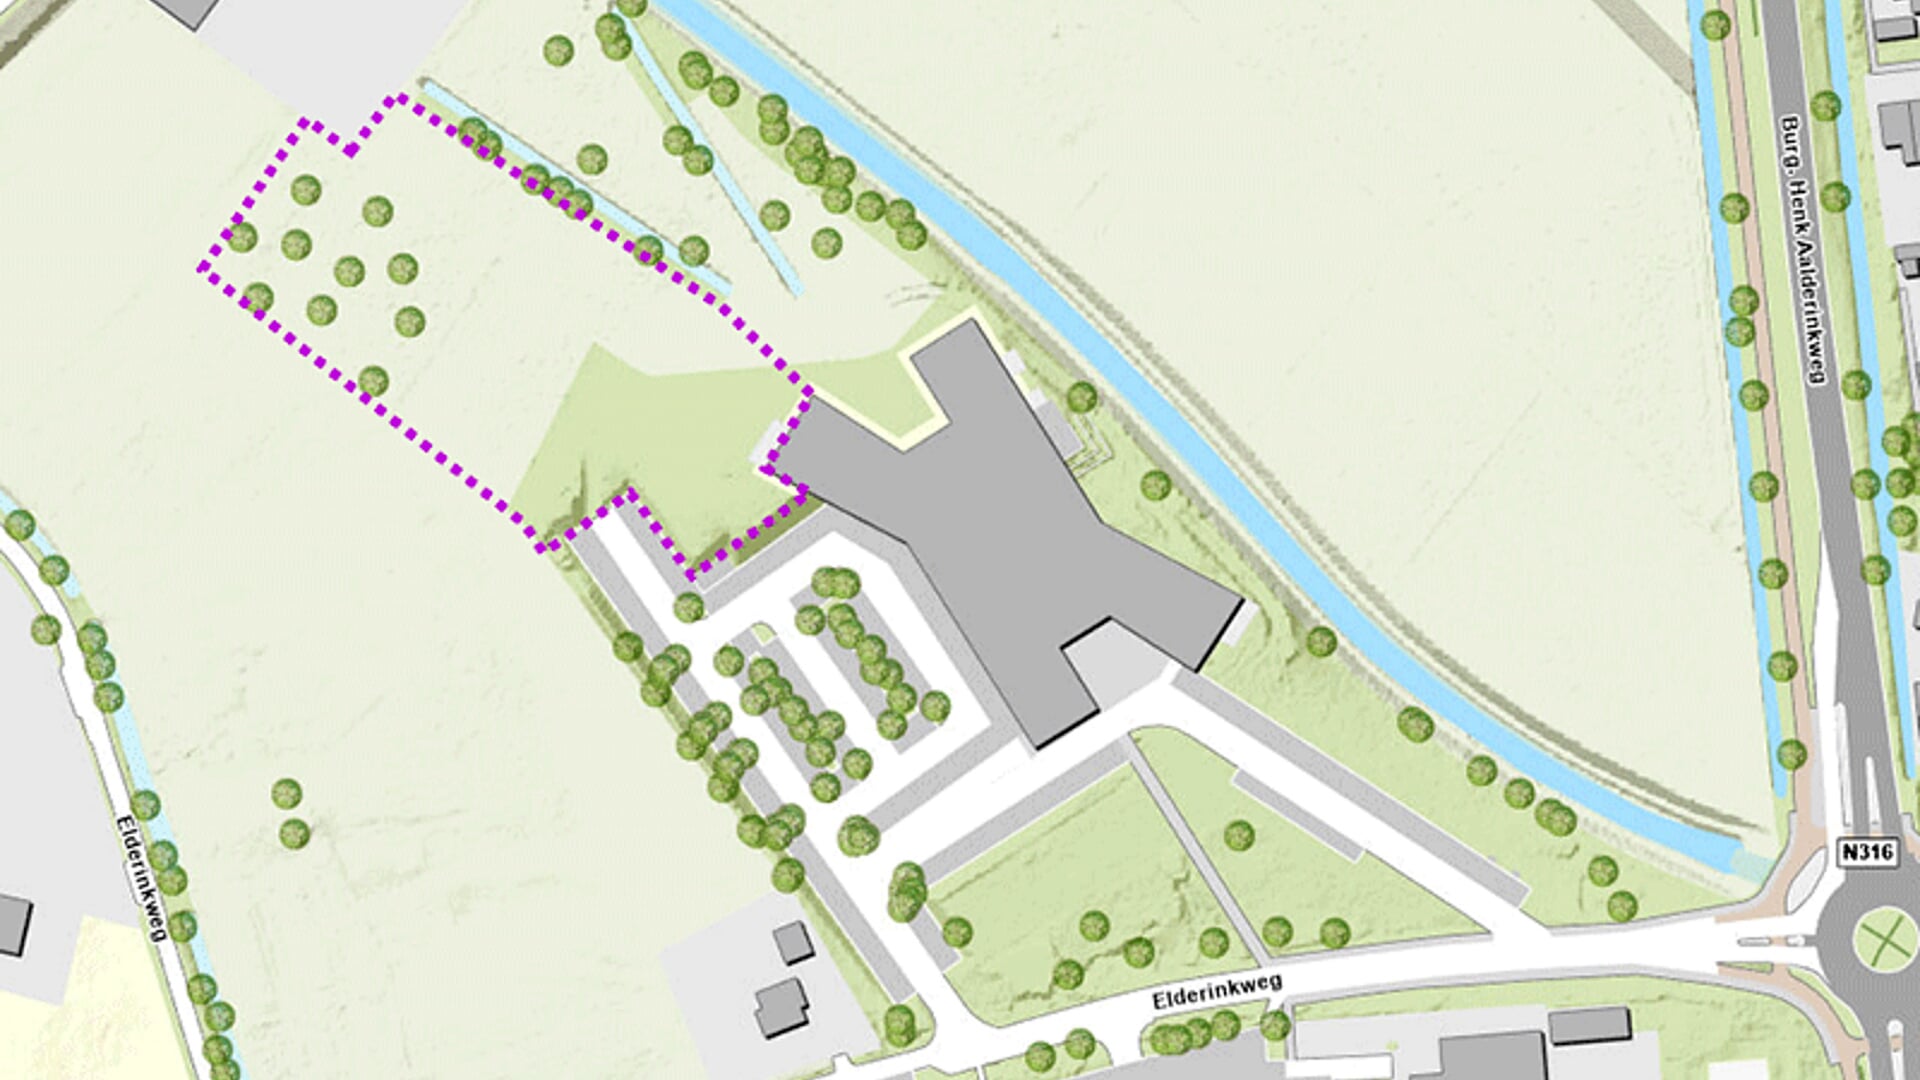 De beoogde locatie is met stippellijnen aangegeven. Het grote grijze vlak is het gemeentehuis. Bron: gemeente Bronckhorst